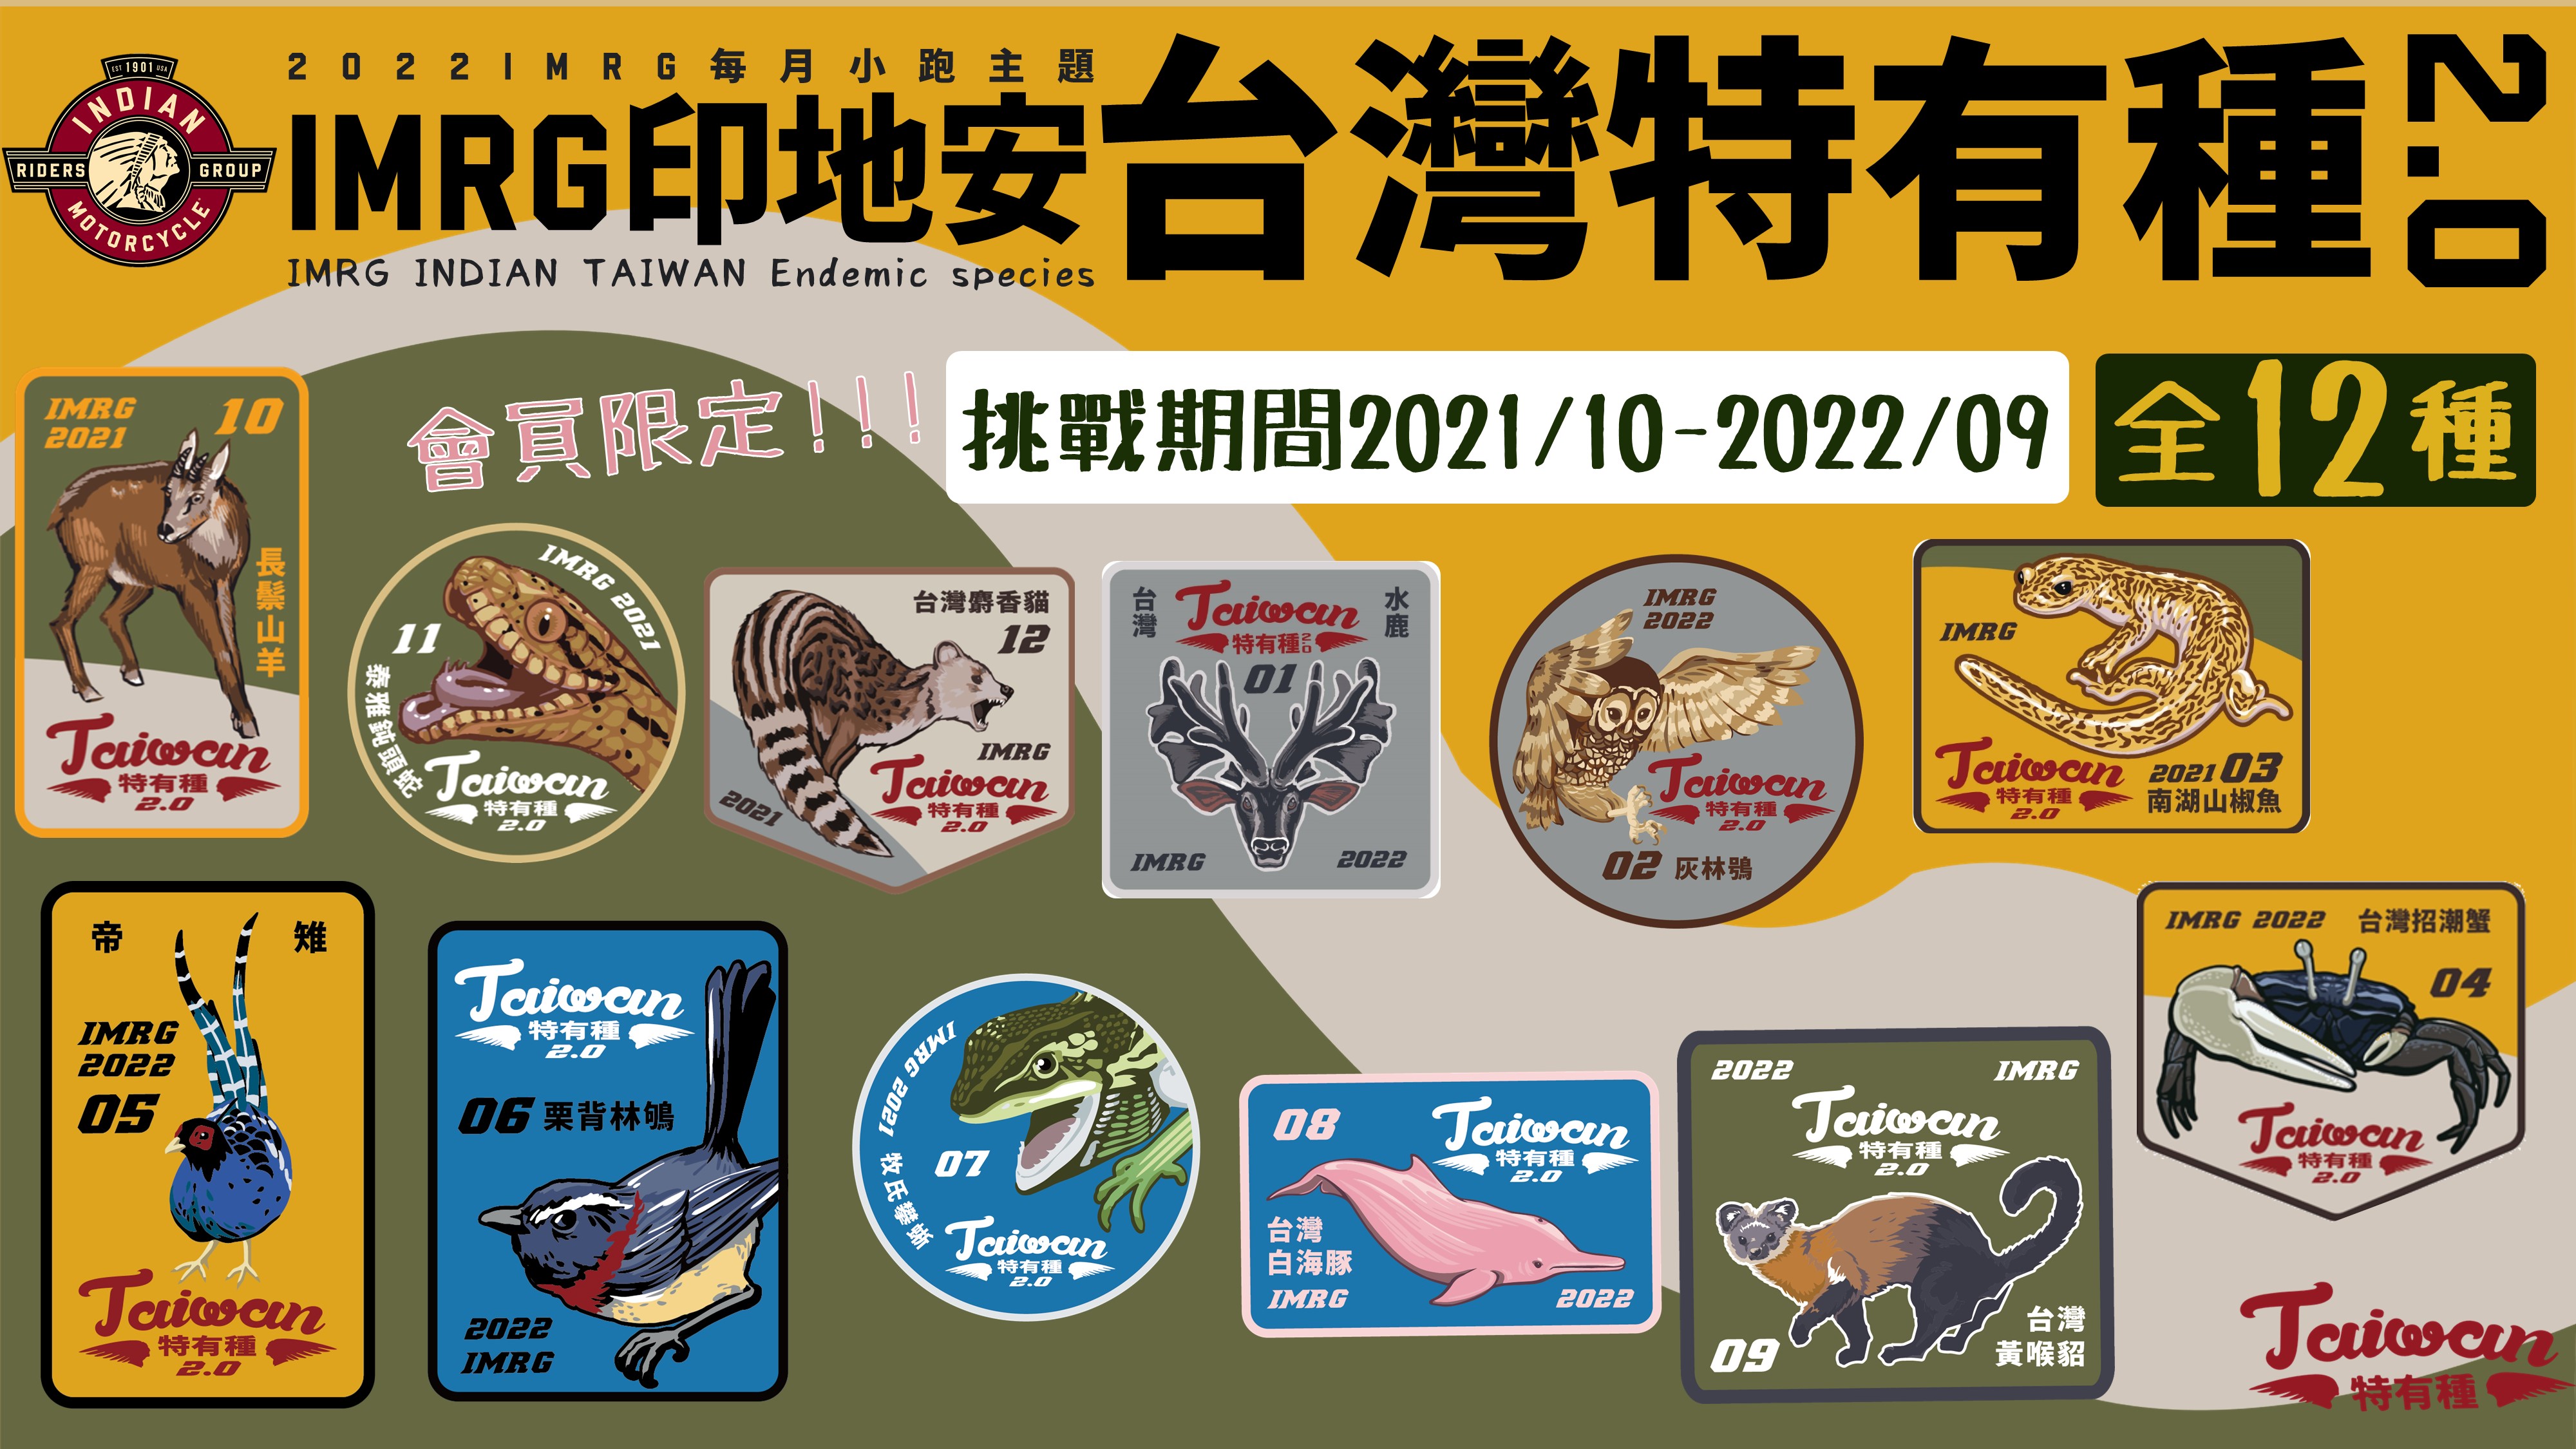  [ 每月小跑 ] 2022年IMRG每月小跑-印地安台灣特有種2.0即將上路啦！！！！